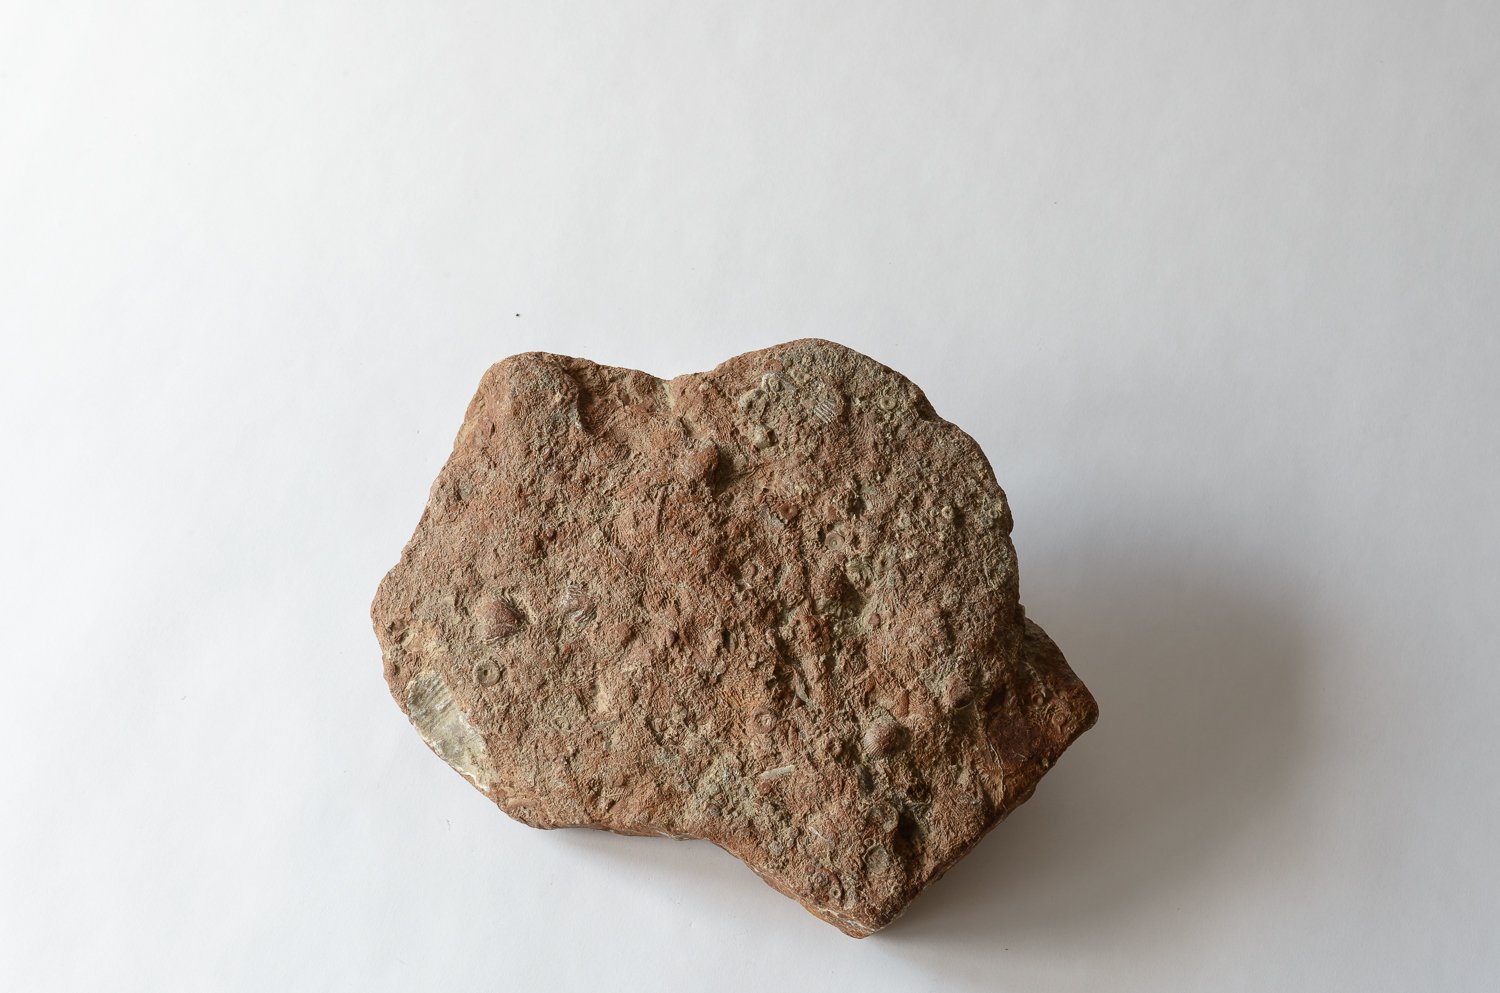   Fossiliferous limestone  